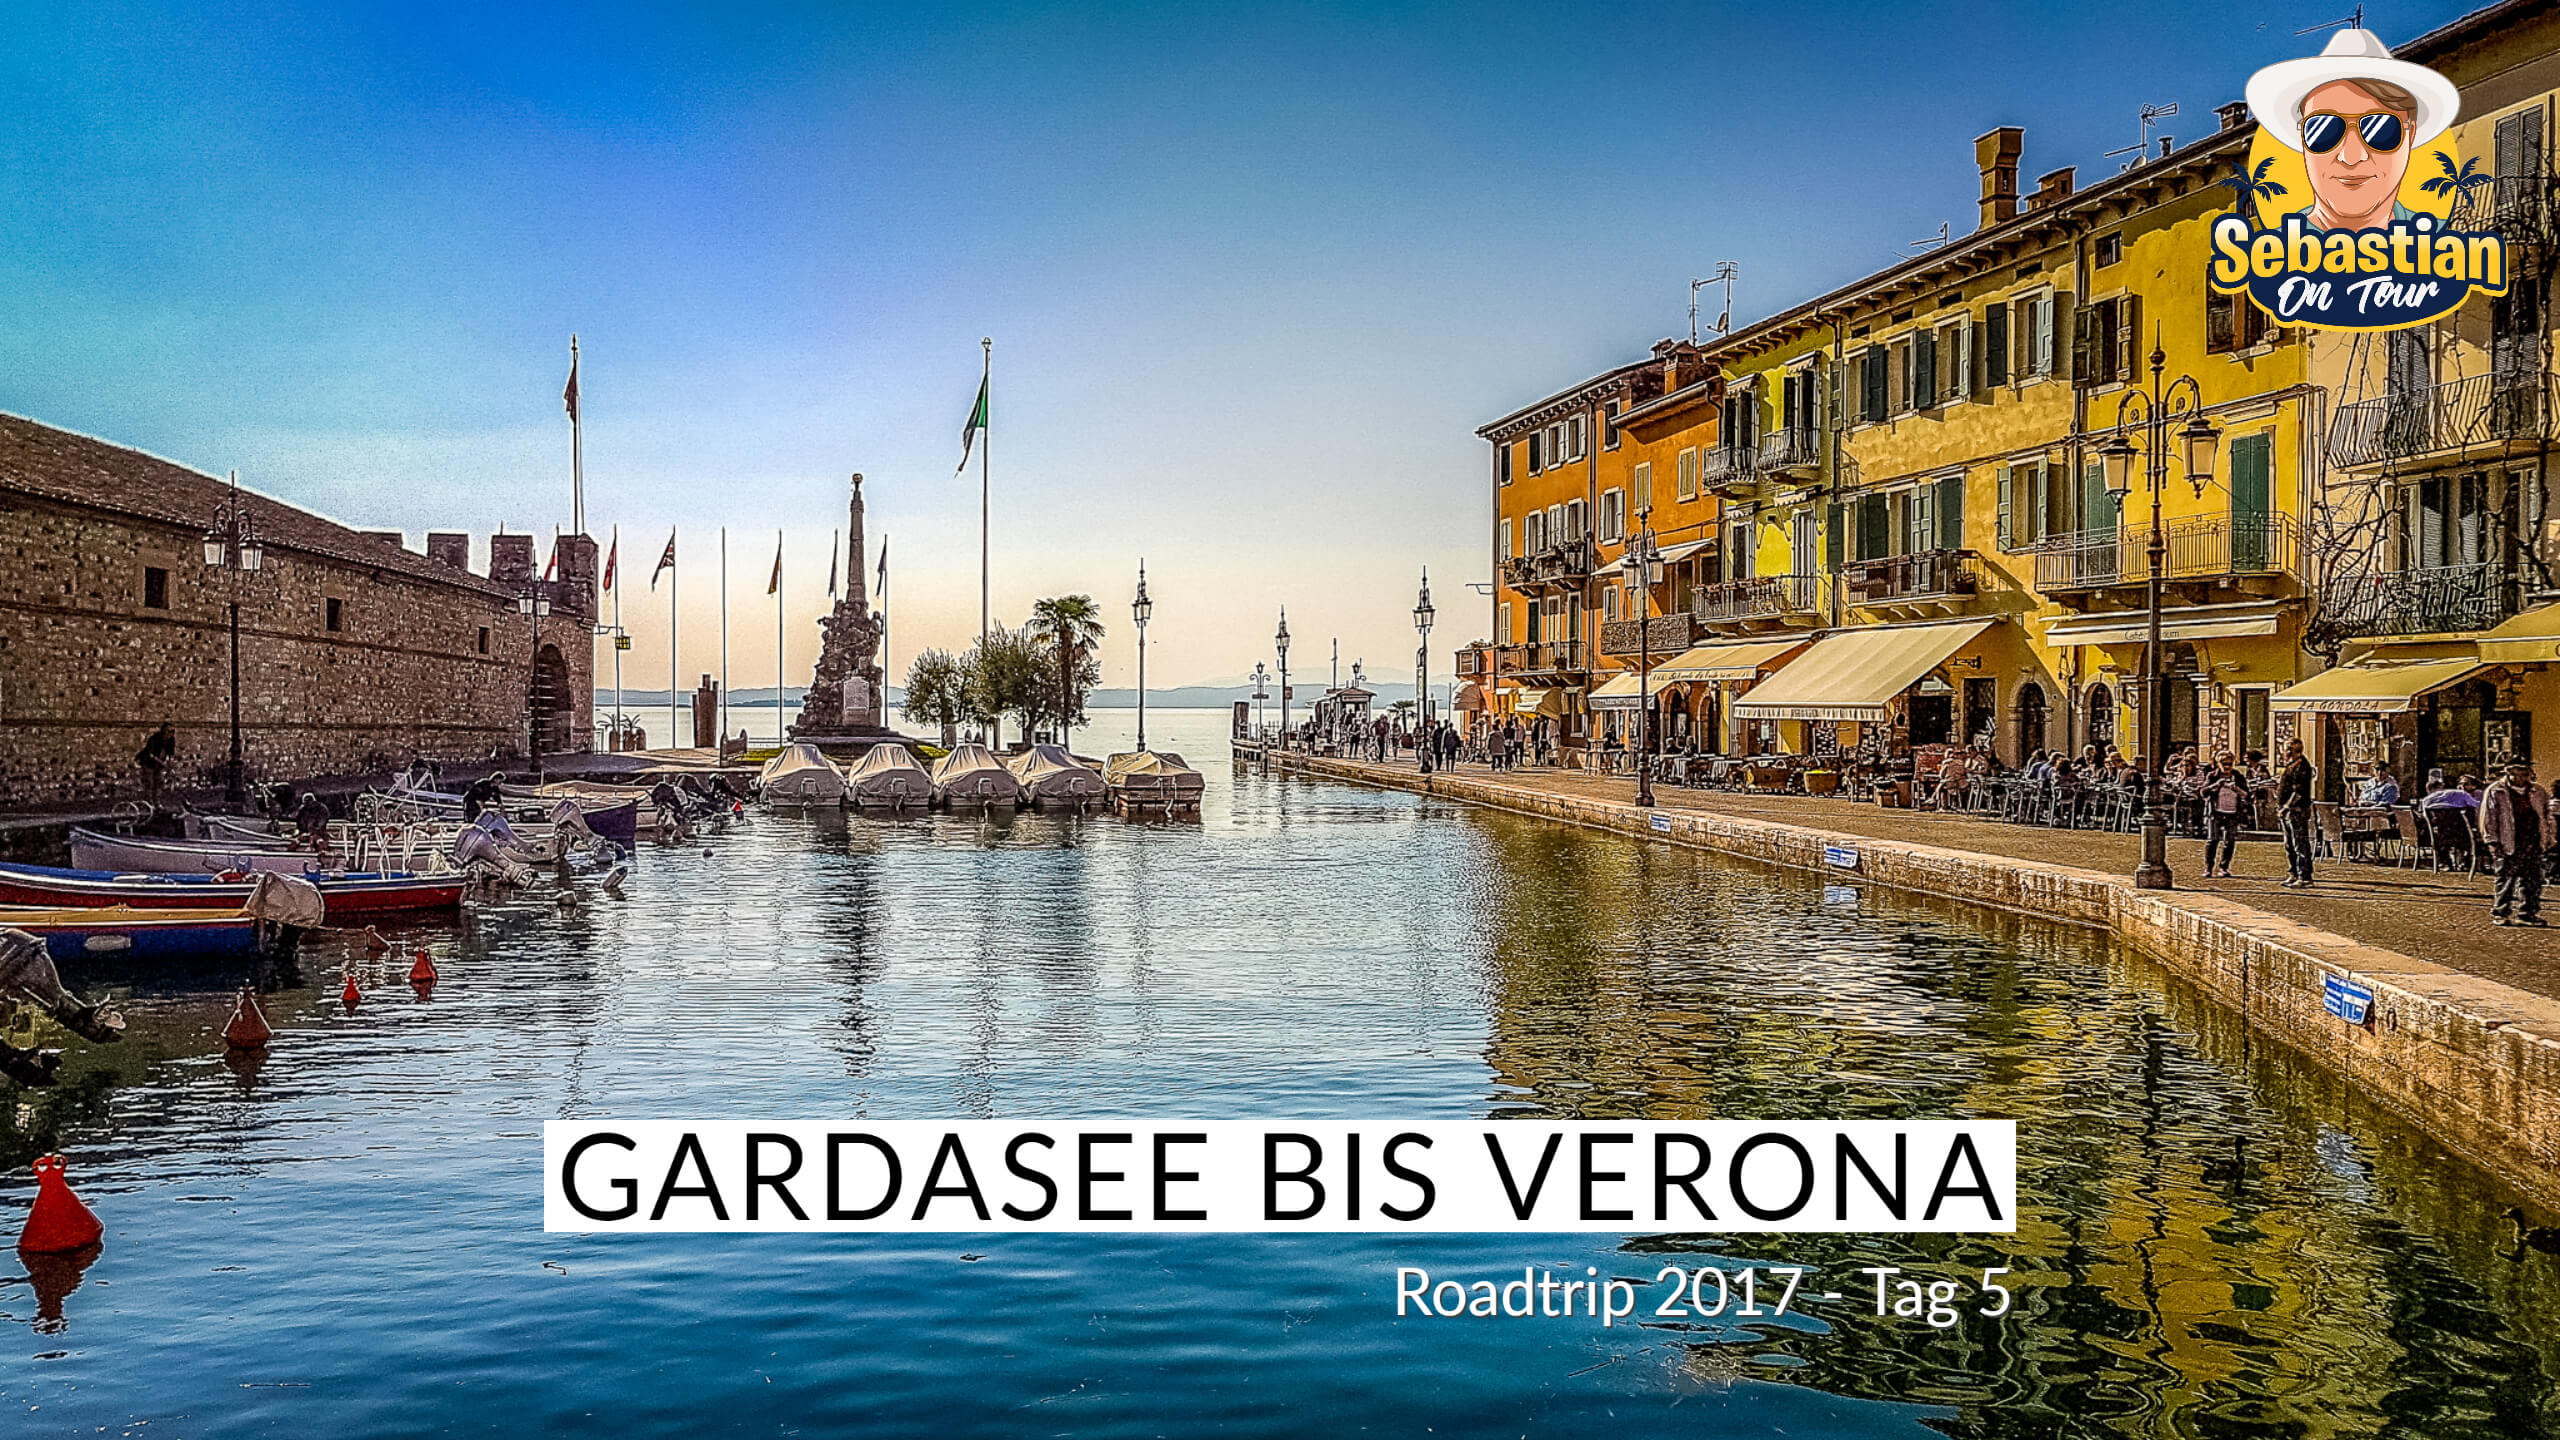 Gardasee bis Verona - Cabrio Tour 2017 - Tag 5